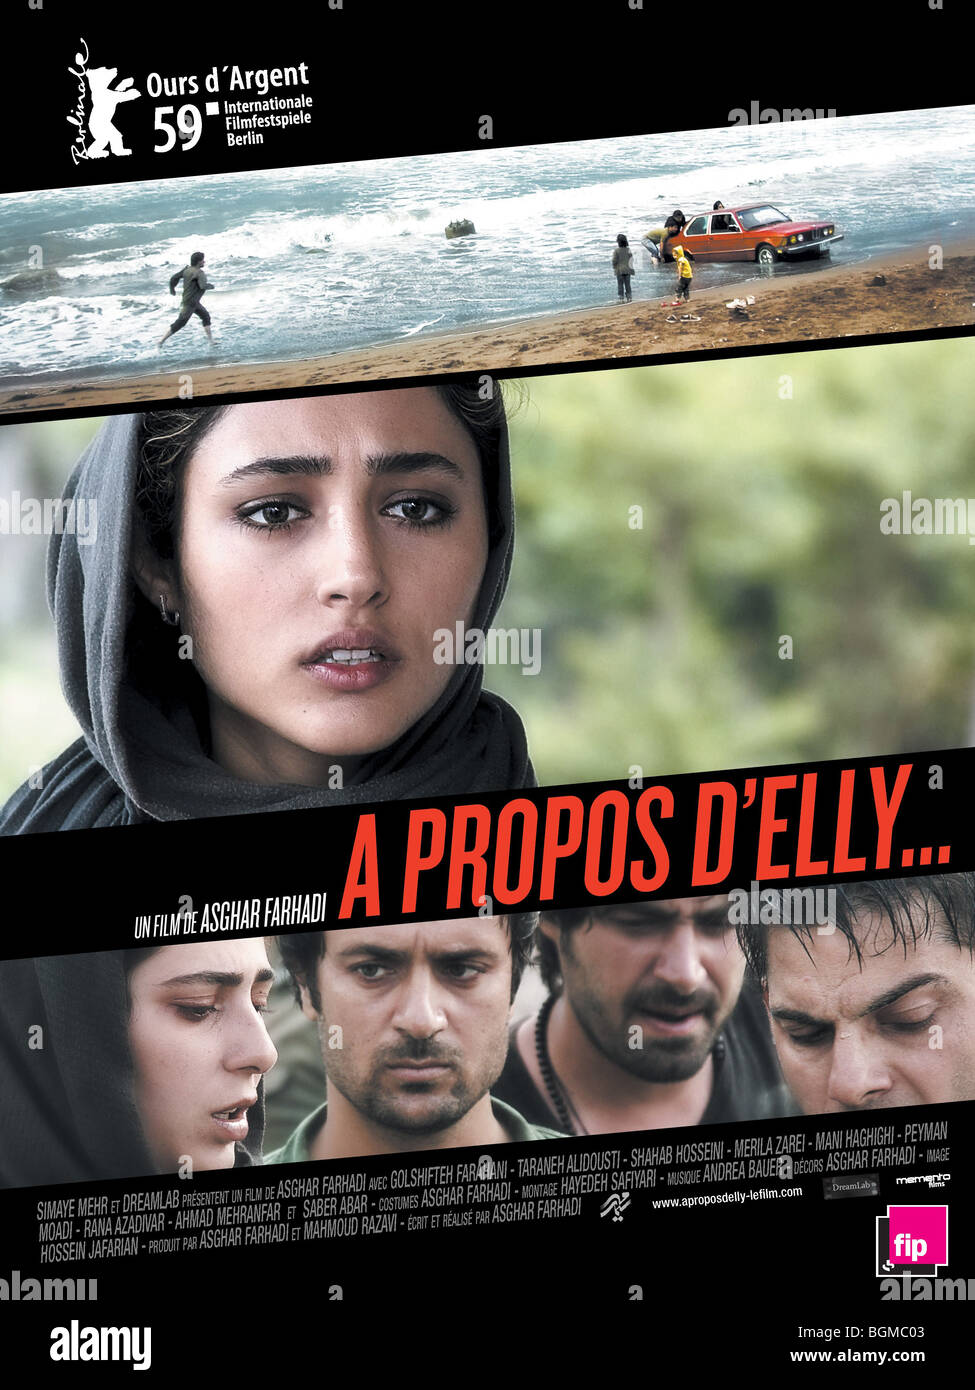 Darbareye Elly circa Elly Anno : 2009 Iran Direttore: Asghar Farhadi poster  (Fr Foto stock - Alamy